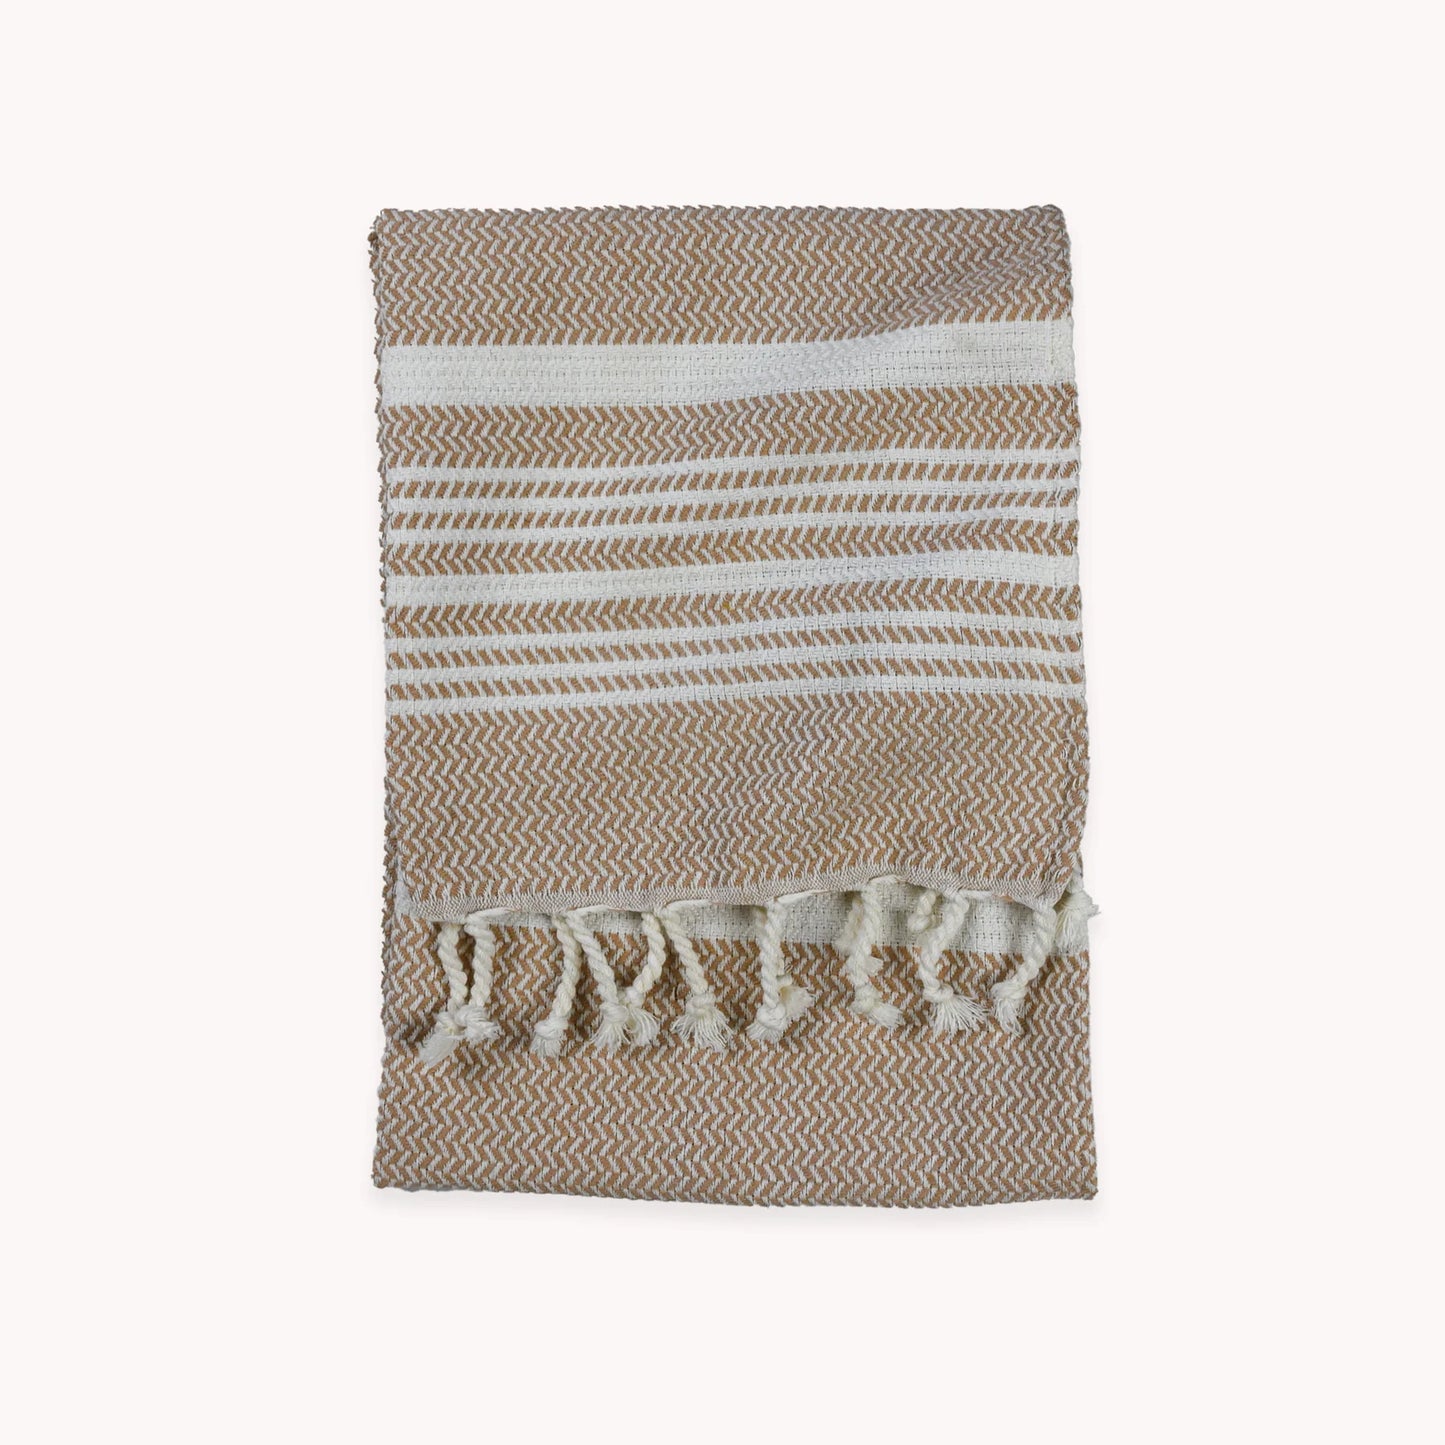 Turkish Cotton Towel Large - Hasir